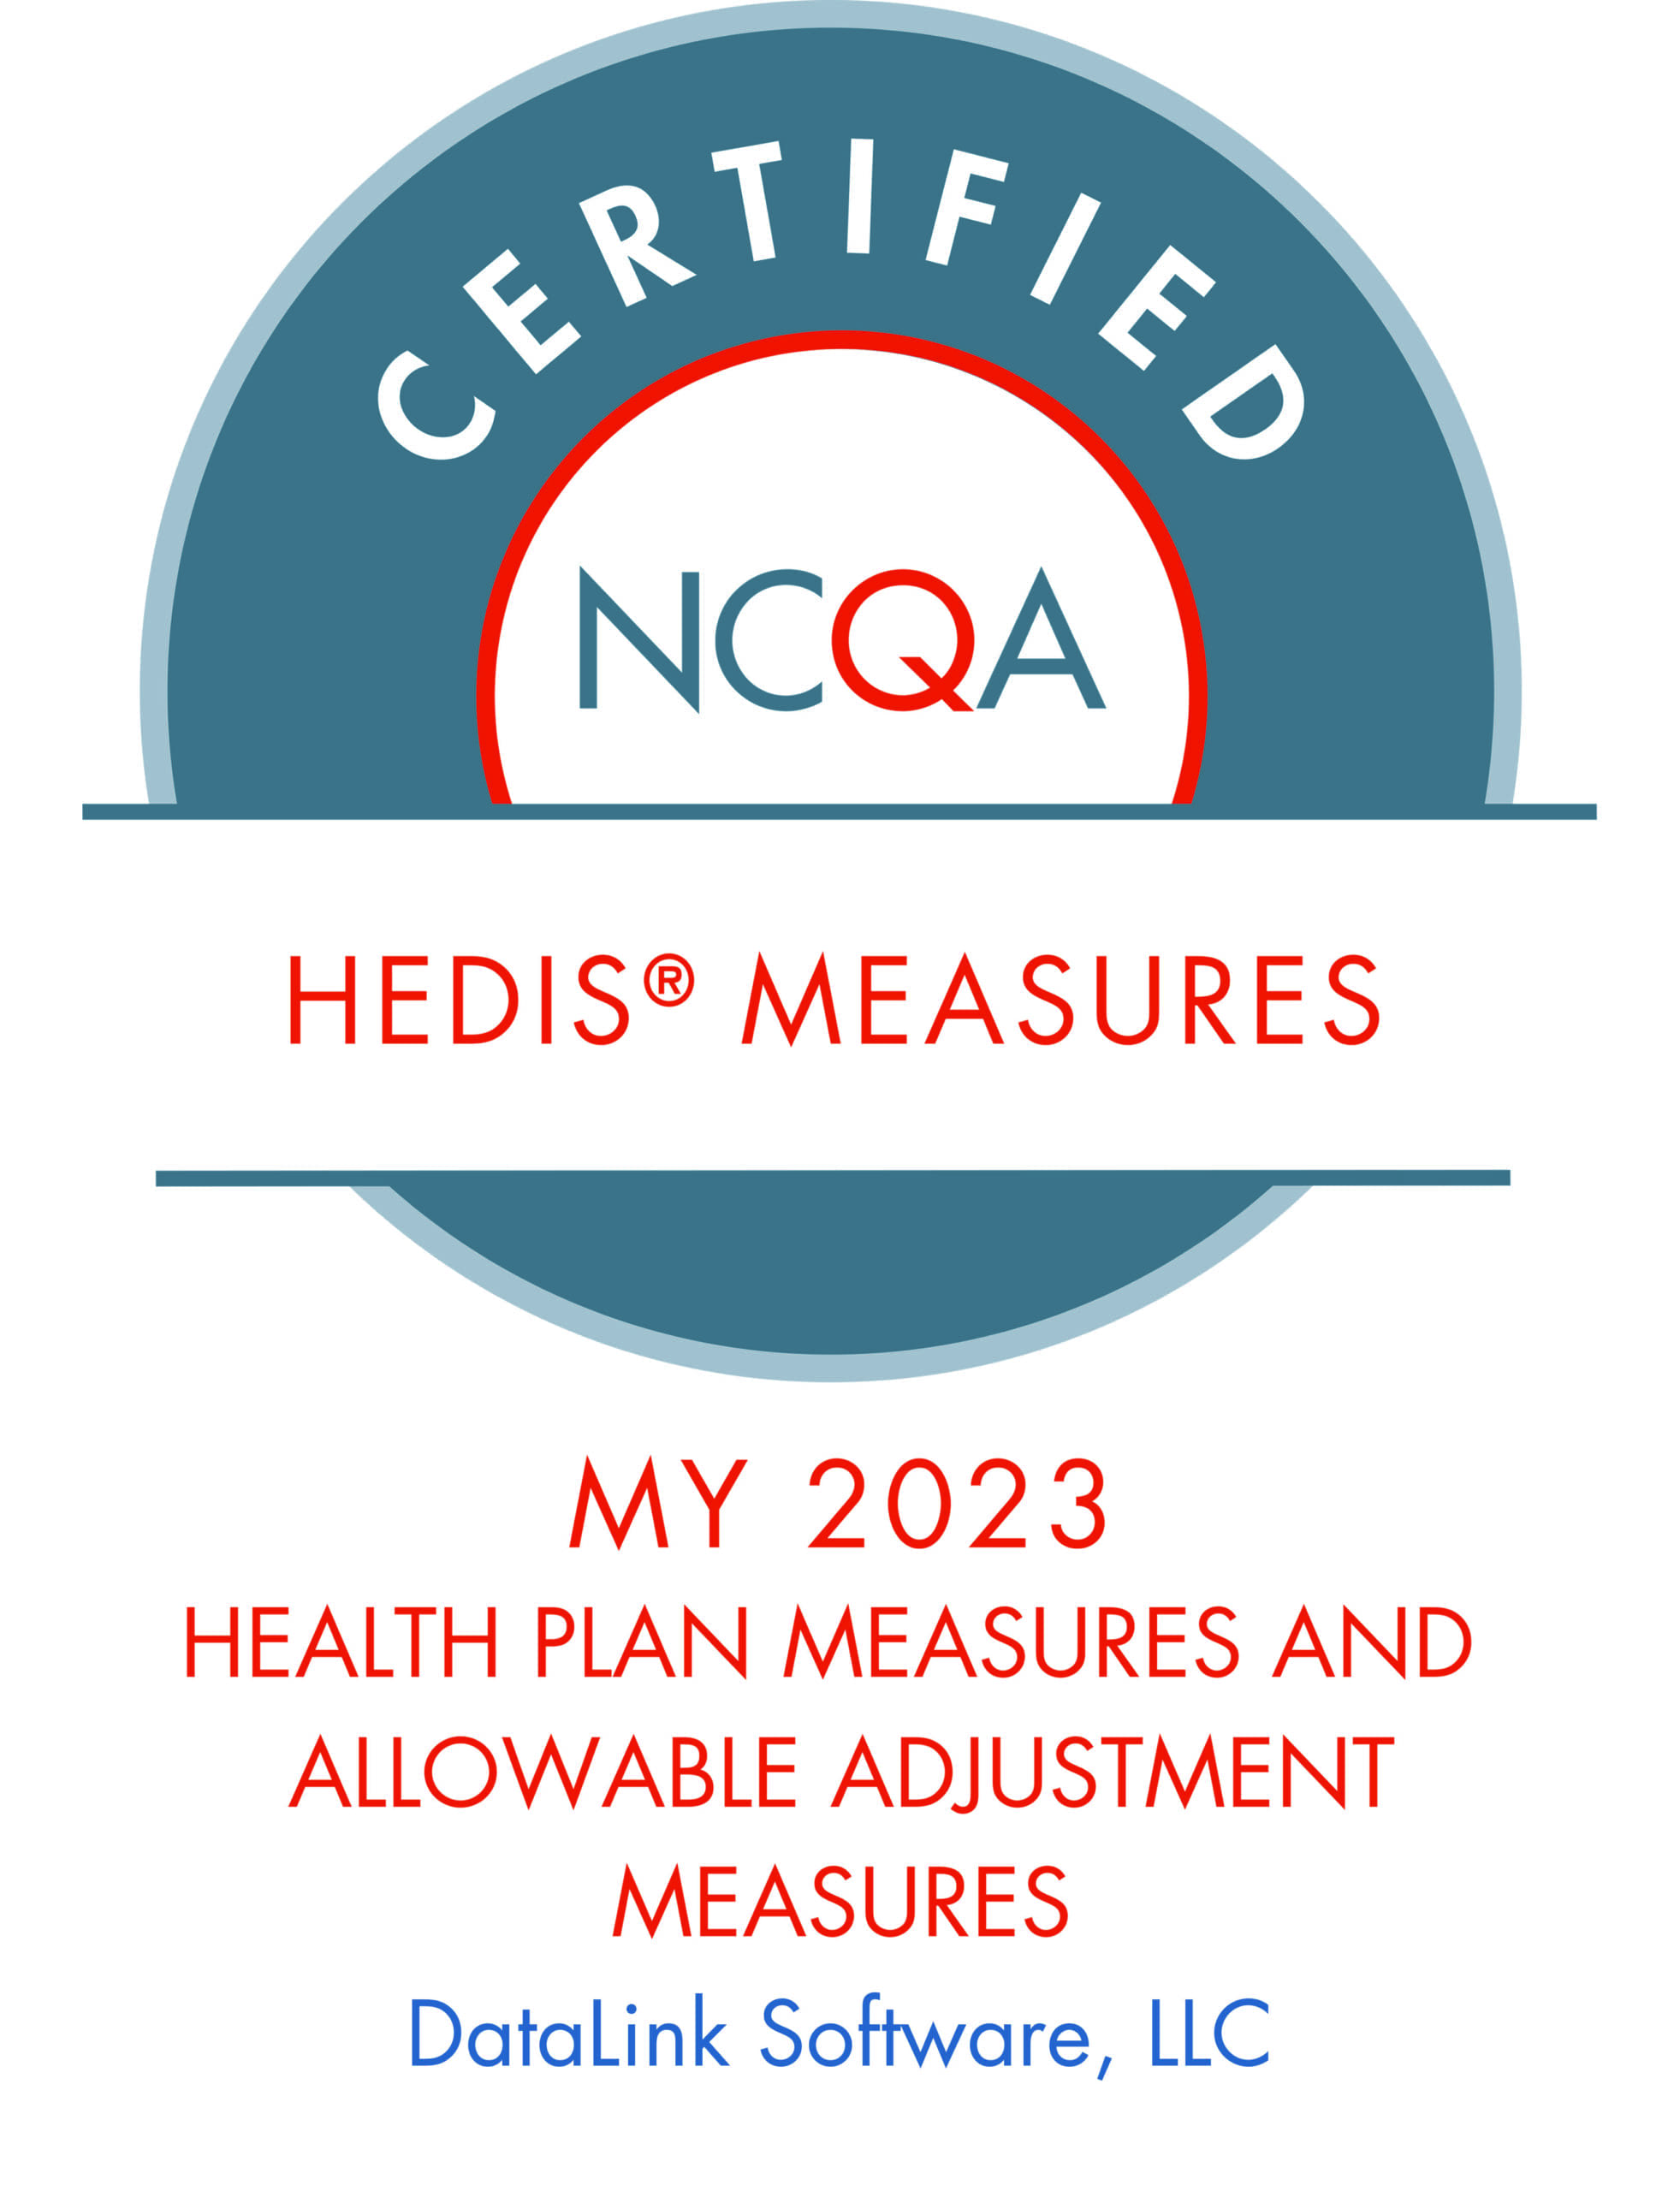 NCQA HEDIS measures certification